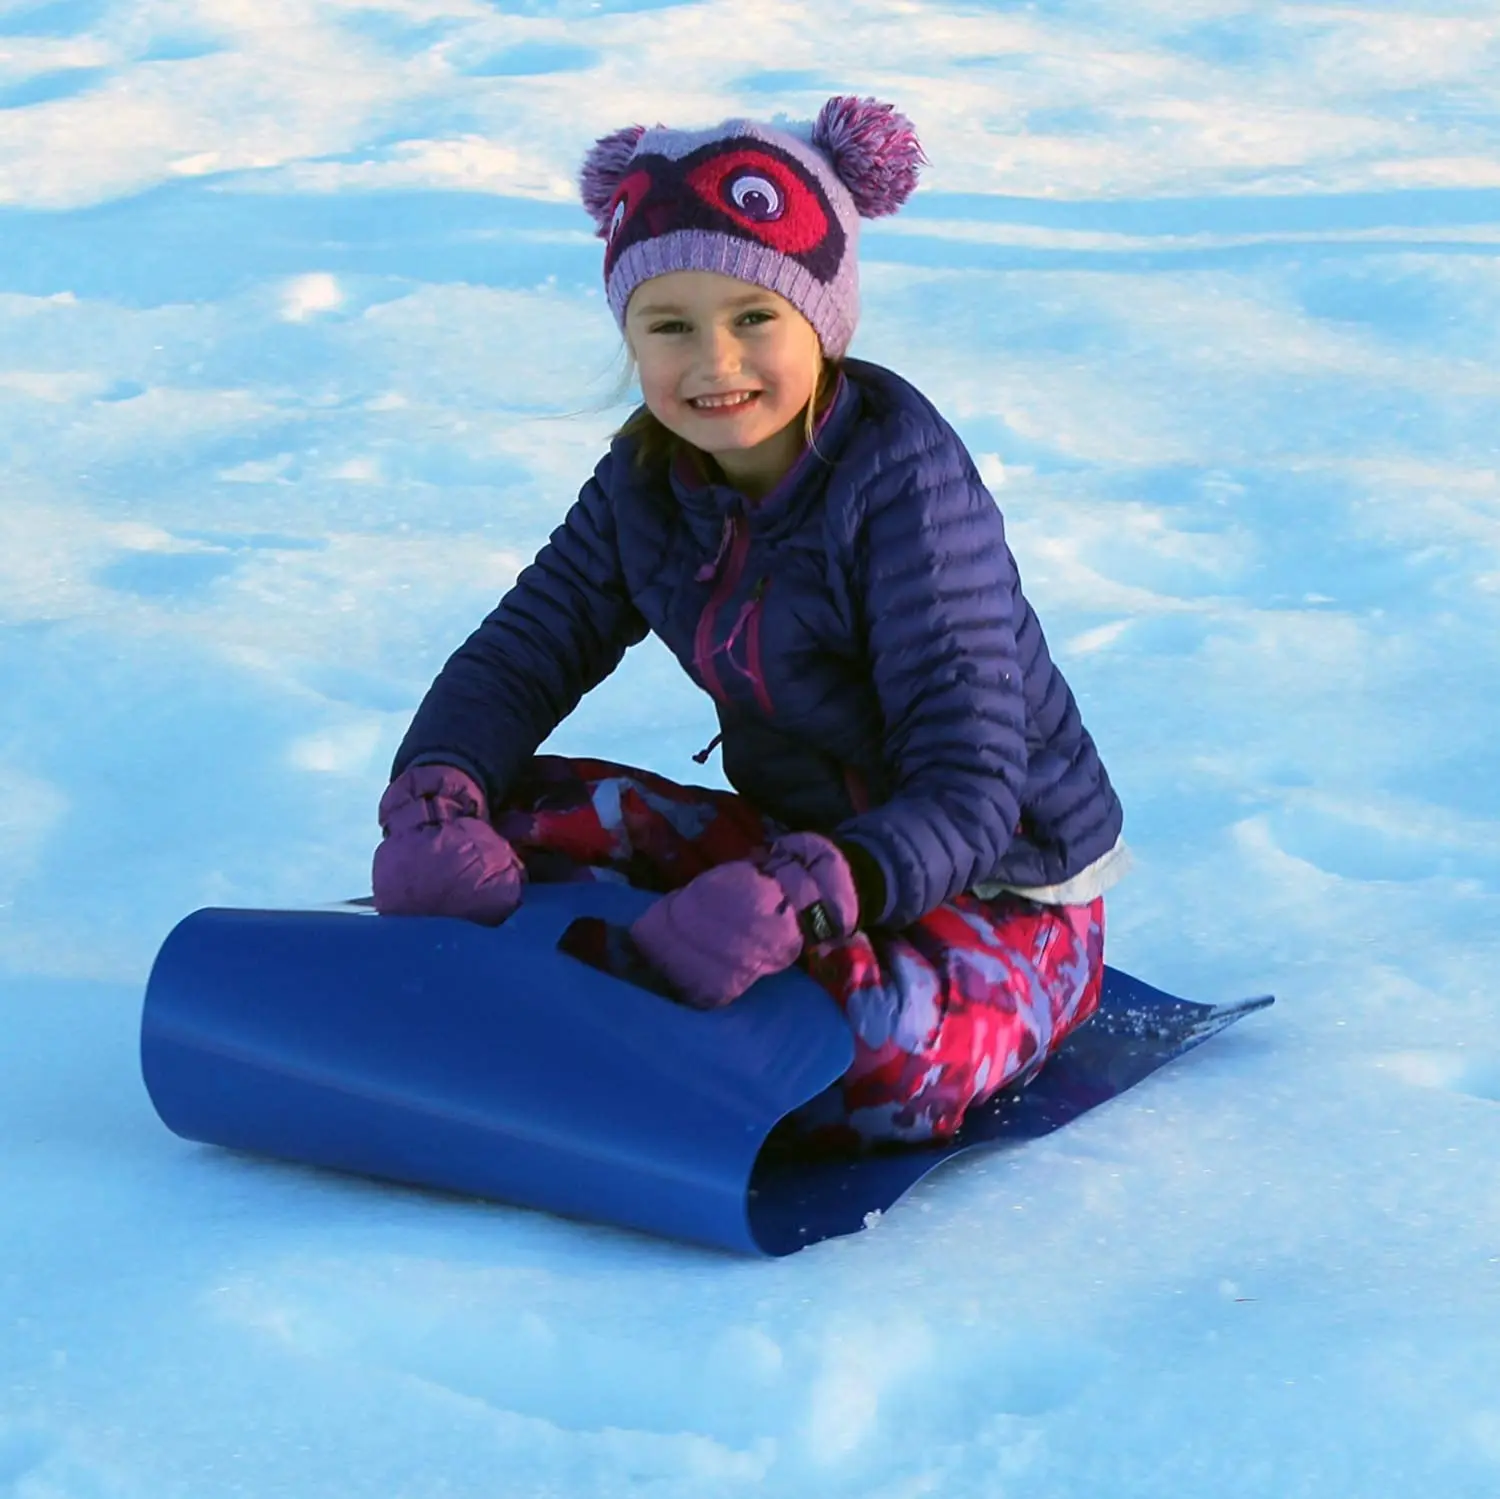 Высококачественное одеяло для катания на лыжах, снежные Санки, гибкий Летающий ковер, легкий катающийся Снежный сани